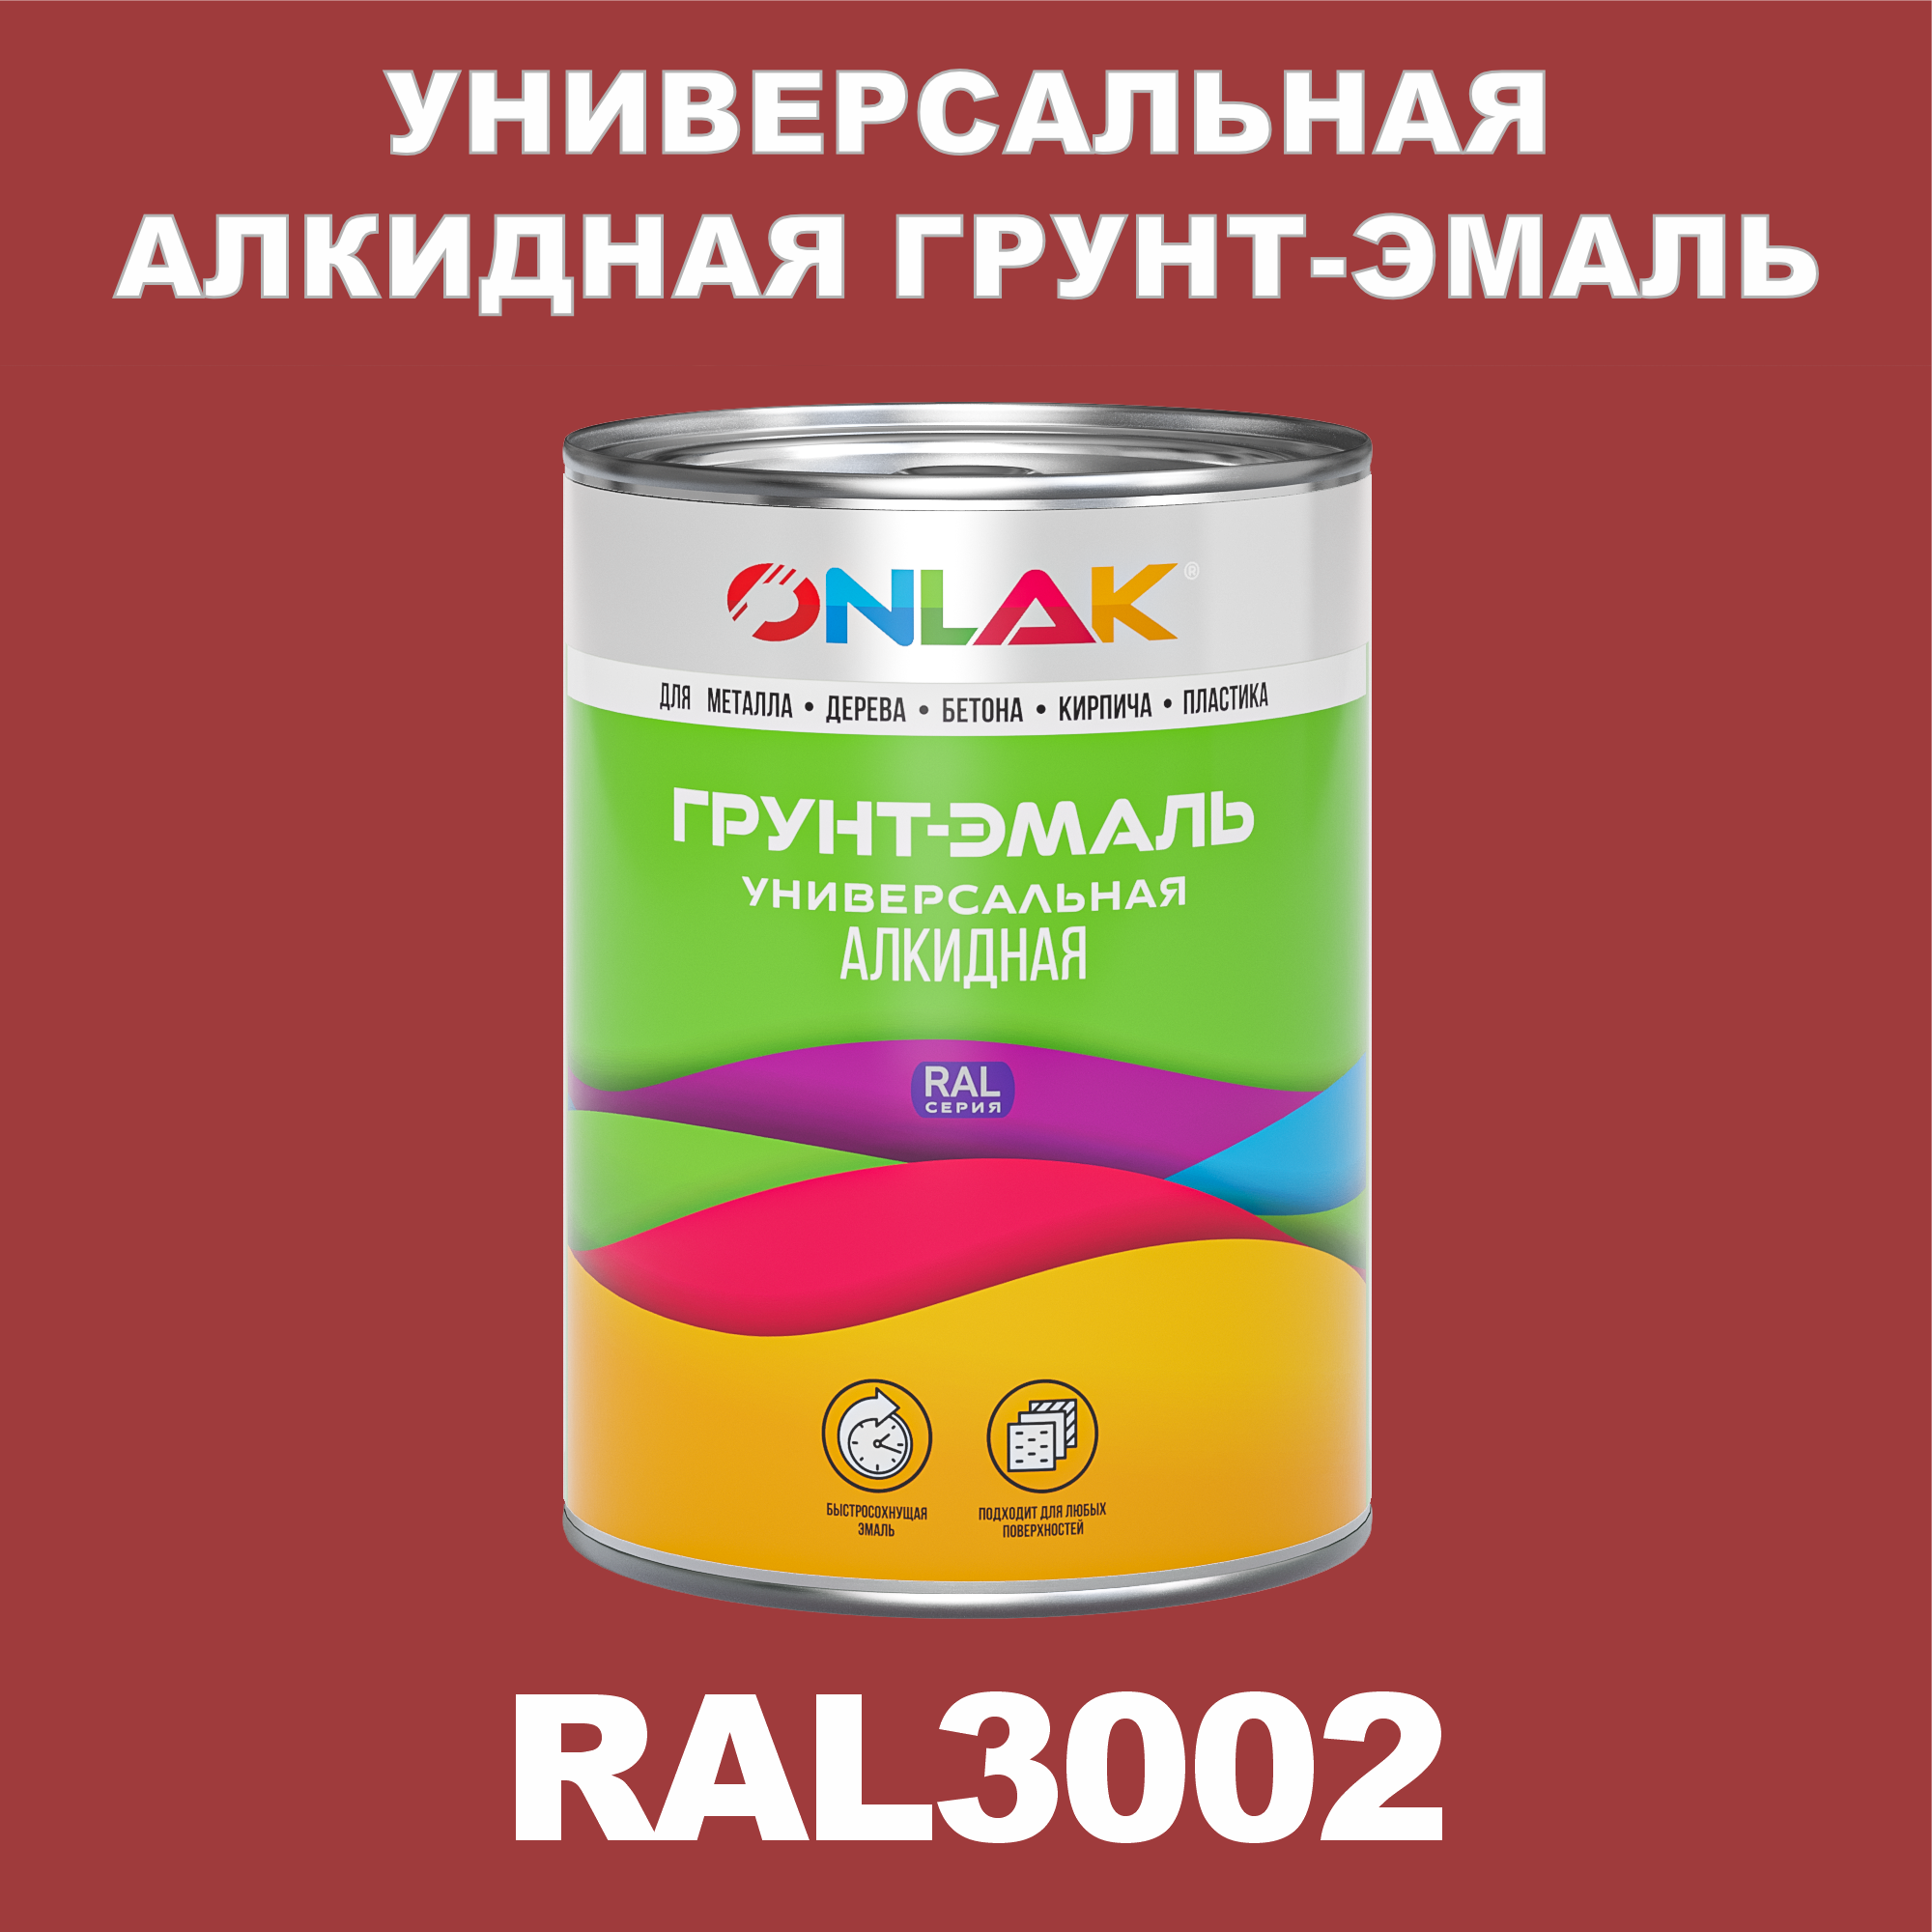 Грунт-эмаль ONLAK 1К RAL3002 антикоррозионная алкидная по металлу по ржавчине 1 кг грунт эмаль престиж по ржавчине алкидная зеленая 1 9 кг